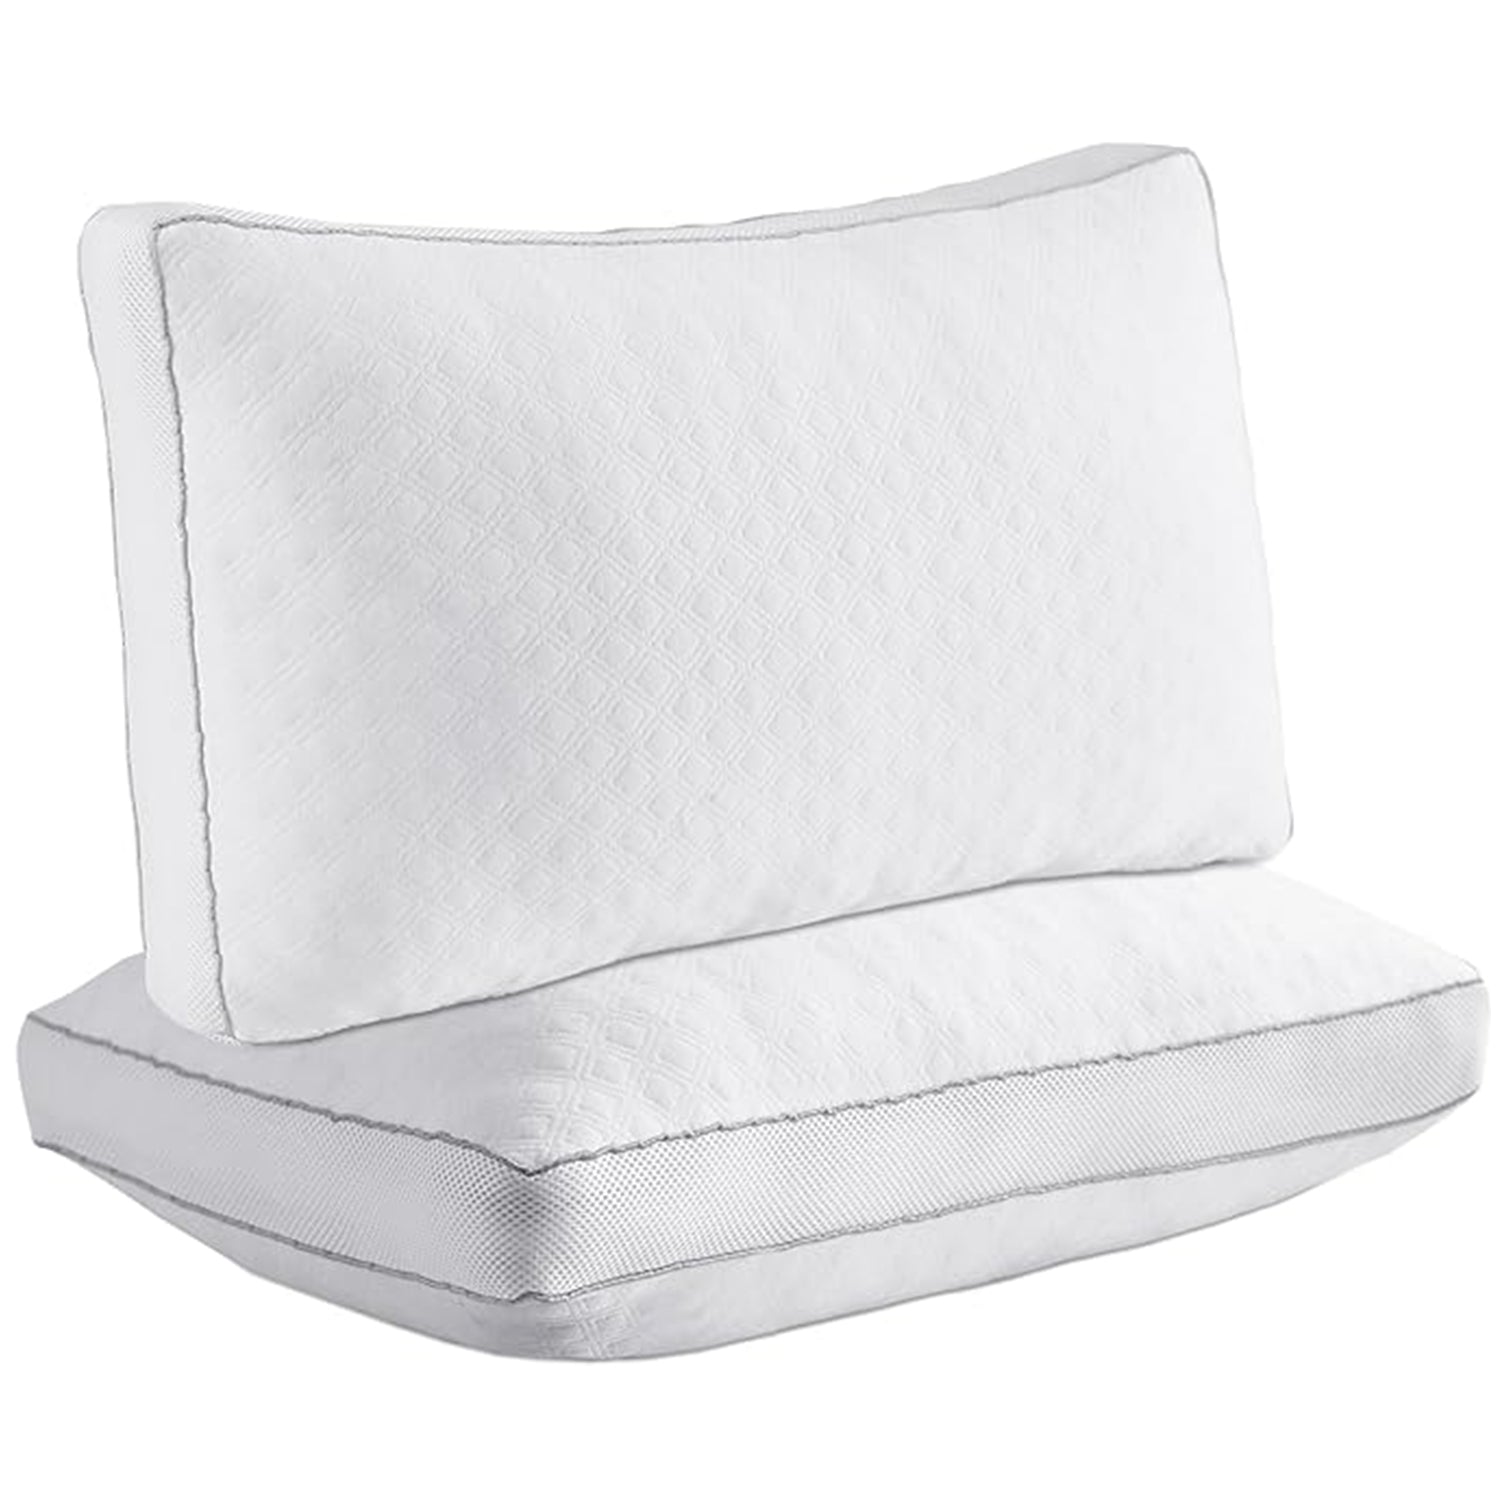 Airmax Pillows - Air Mesh Sides for a Cool Night's Sleep